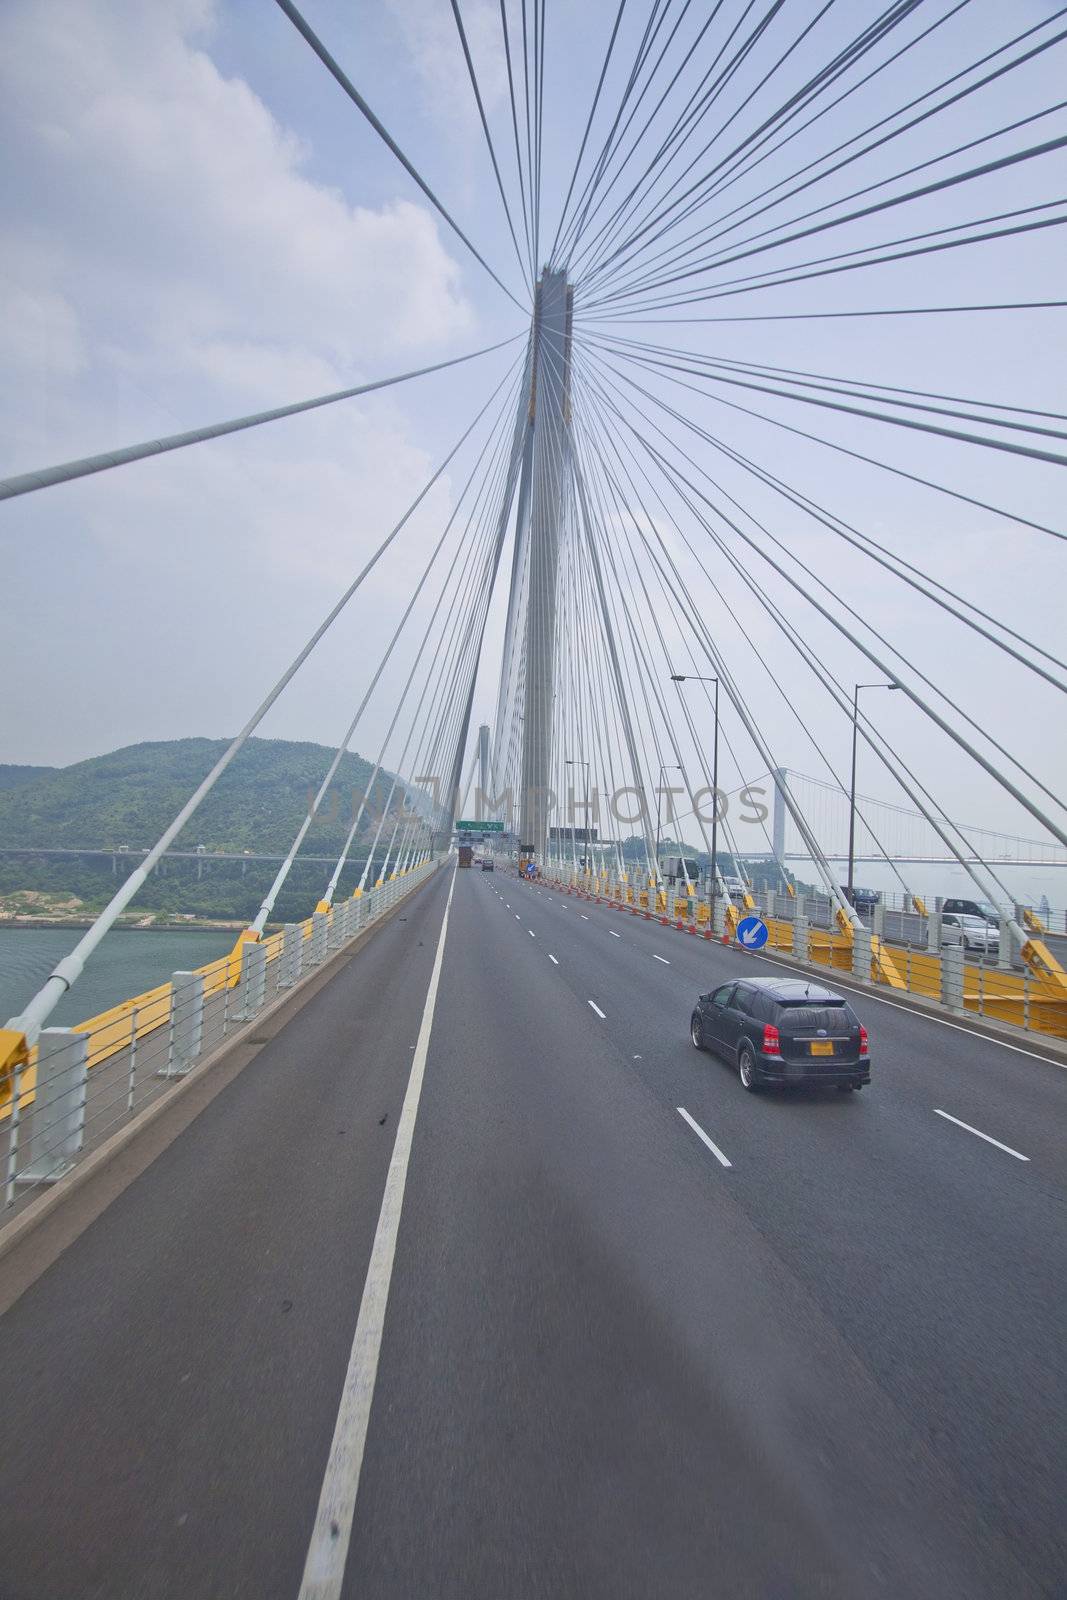 Abstract image of Ting Kau Bridge